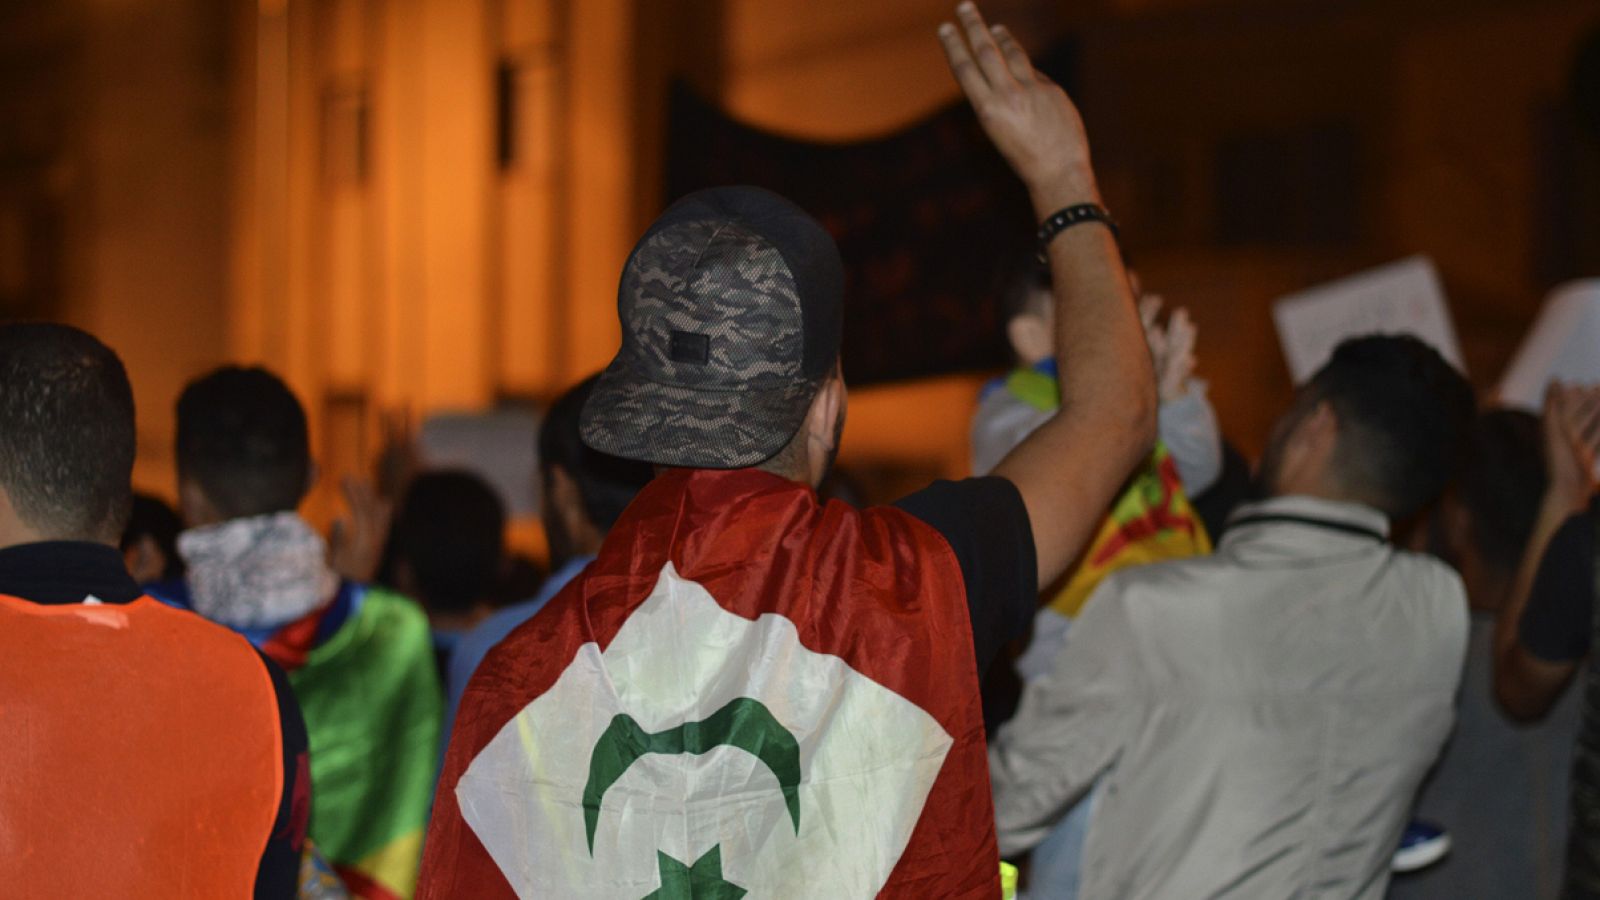 Un manifestante, con la bandera de la República del Rife durante una protesta nocturna celebrada en la ciudad de Alhucemas, Marruecos